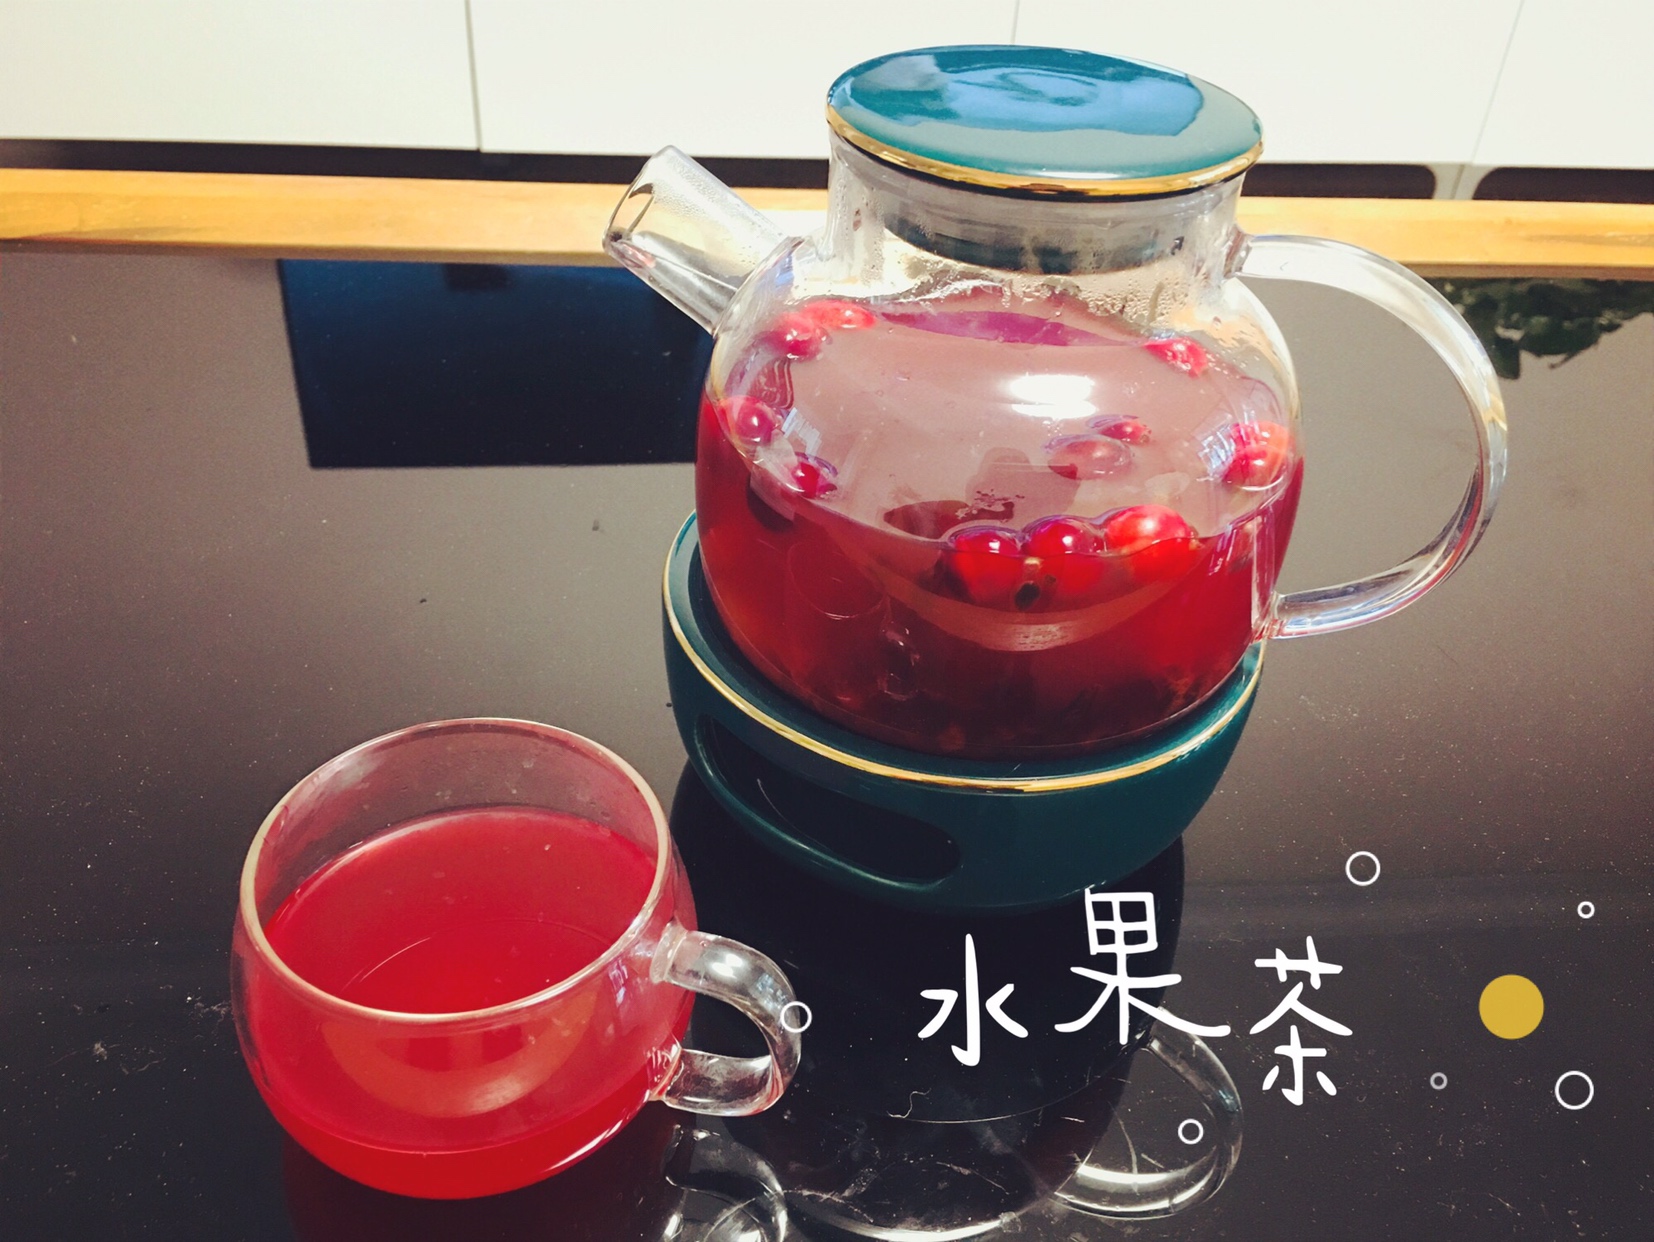 自制水果茶